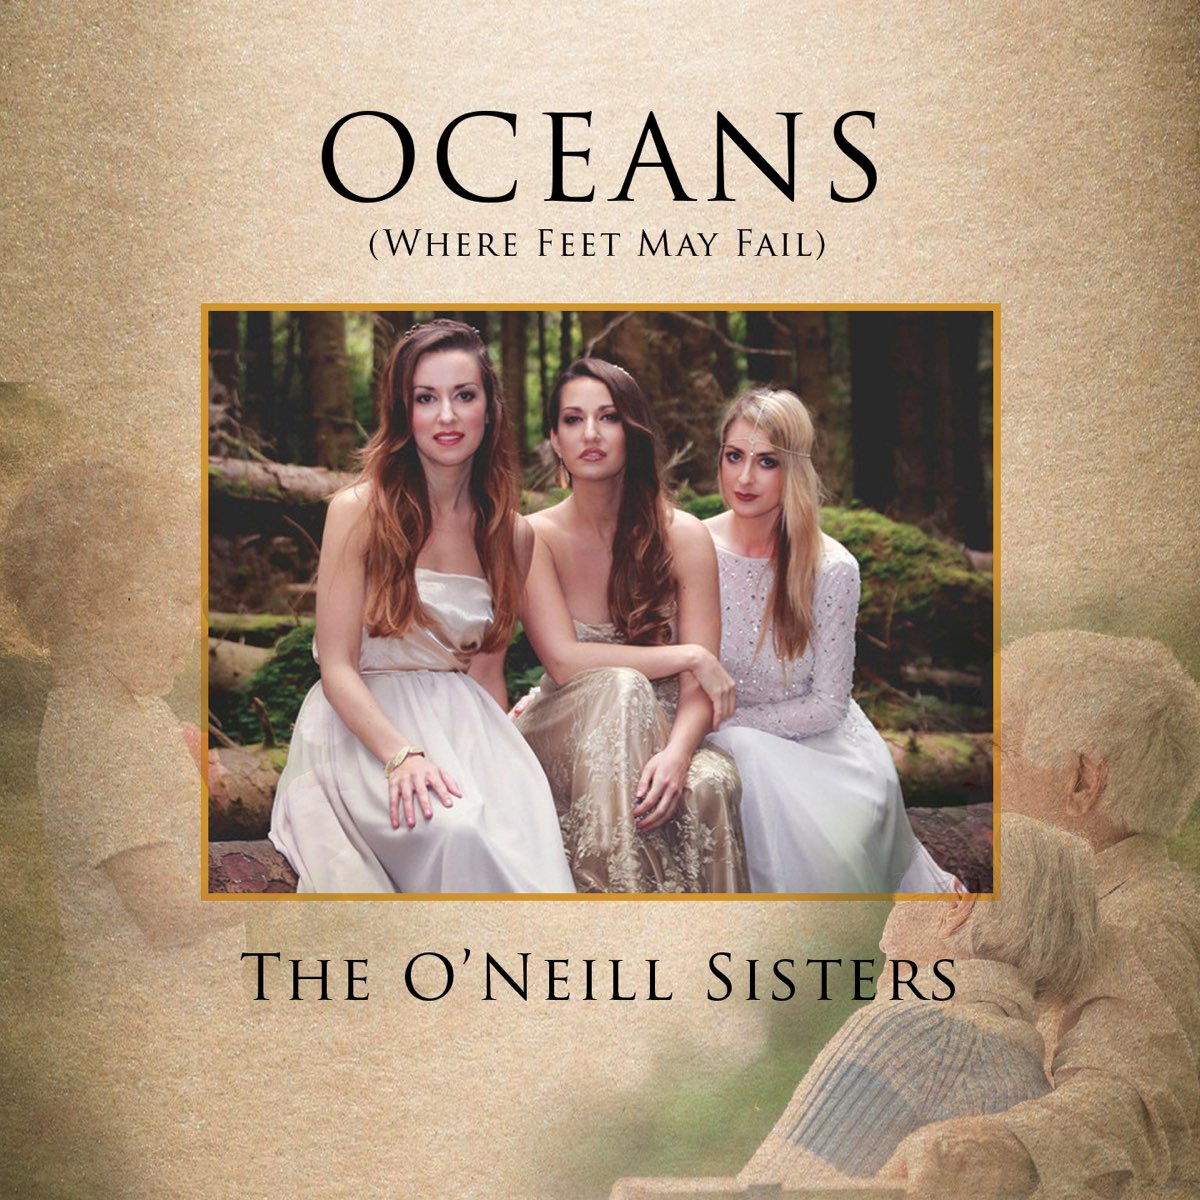 Oceans (where feet May fail). The o’ Neill sisters. Oceans (where feet May fail) Hillsong United, Taya. Where my feet fail.